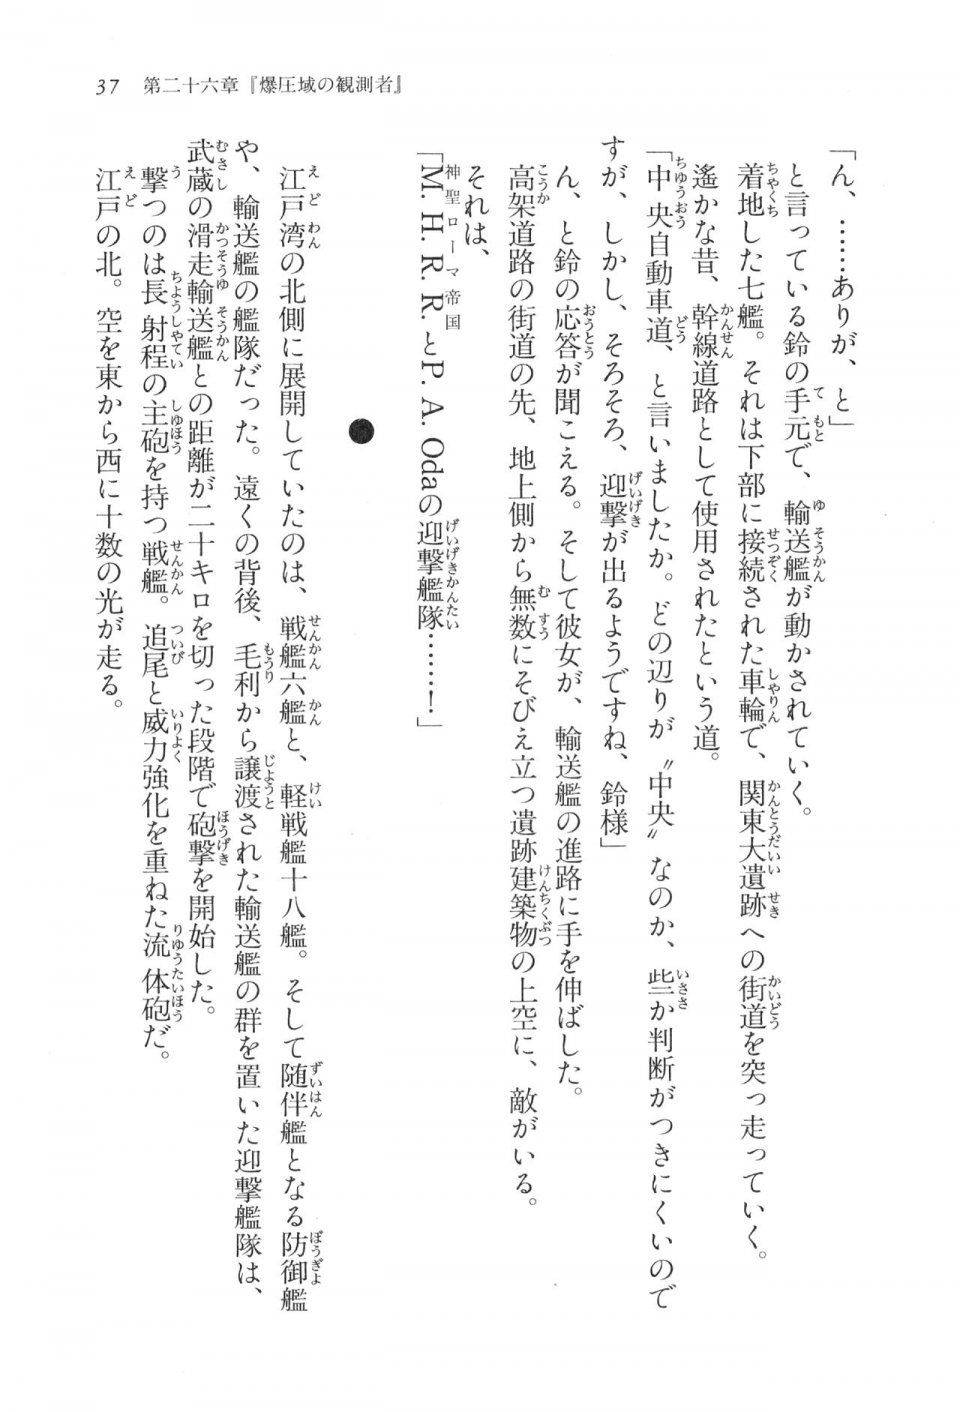 Kyoukai Senjou no Horizon LN Vol 17(7B) - Photo #37